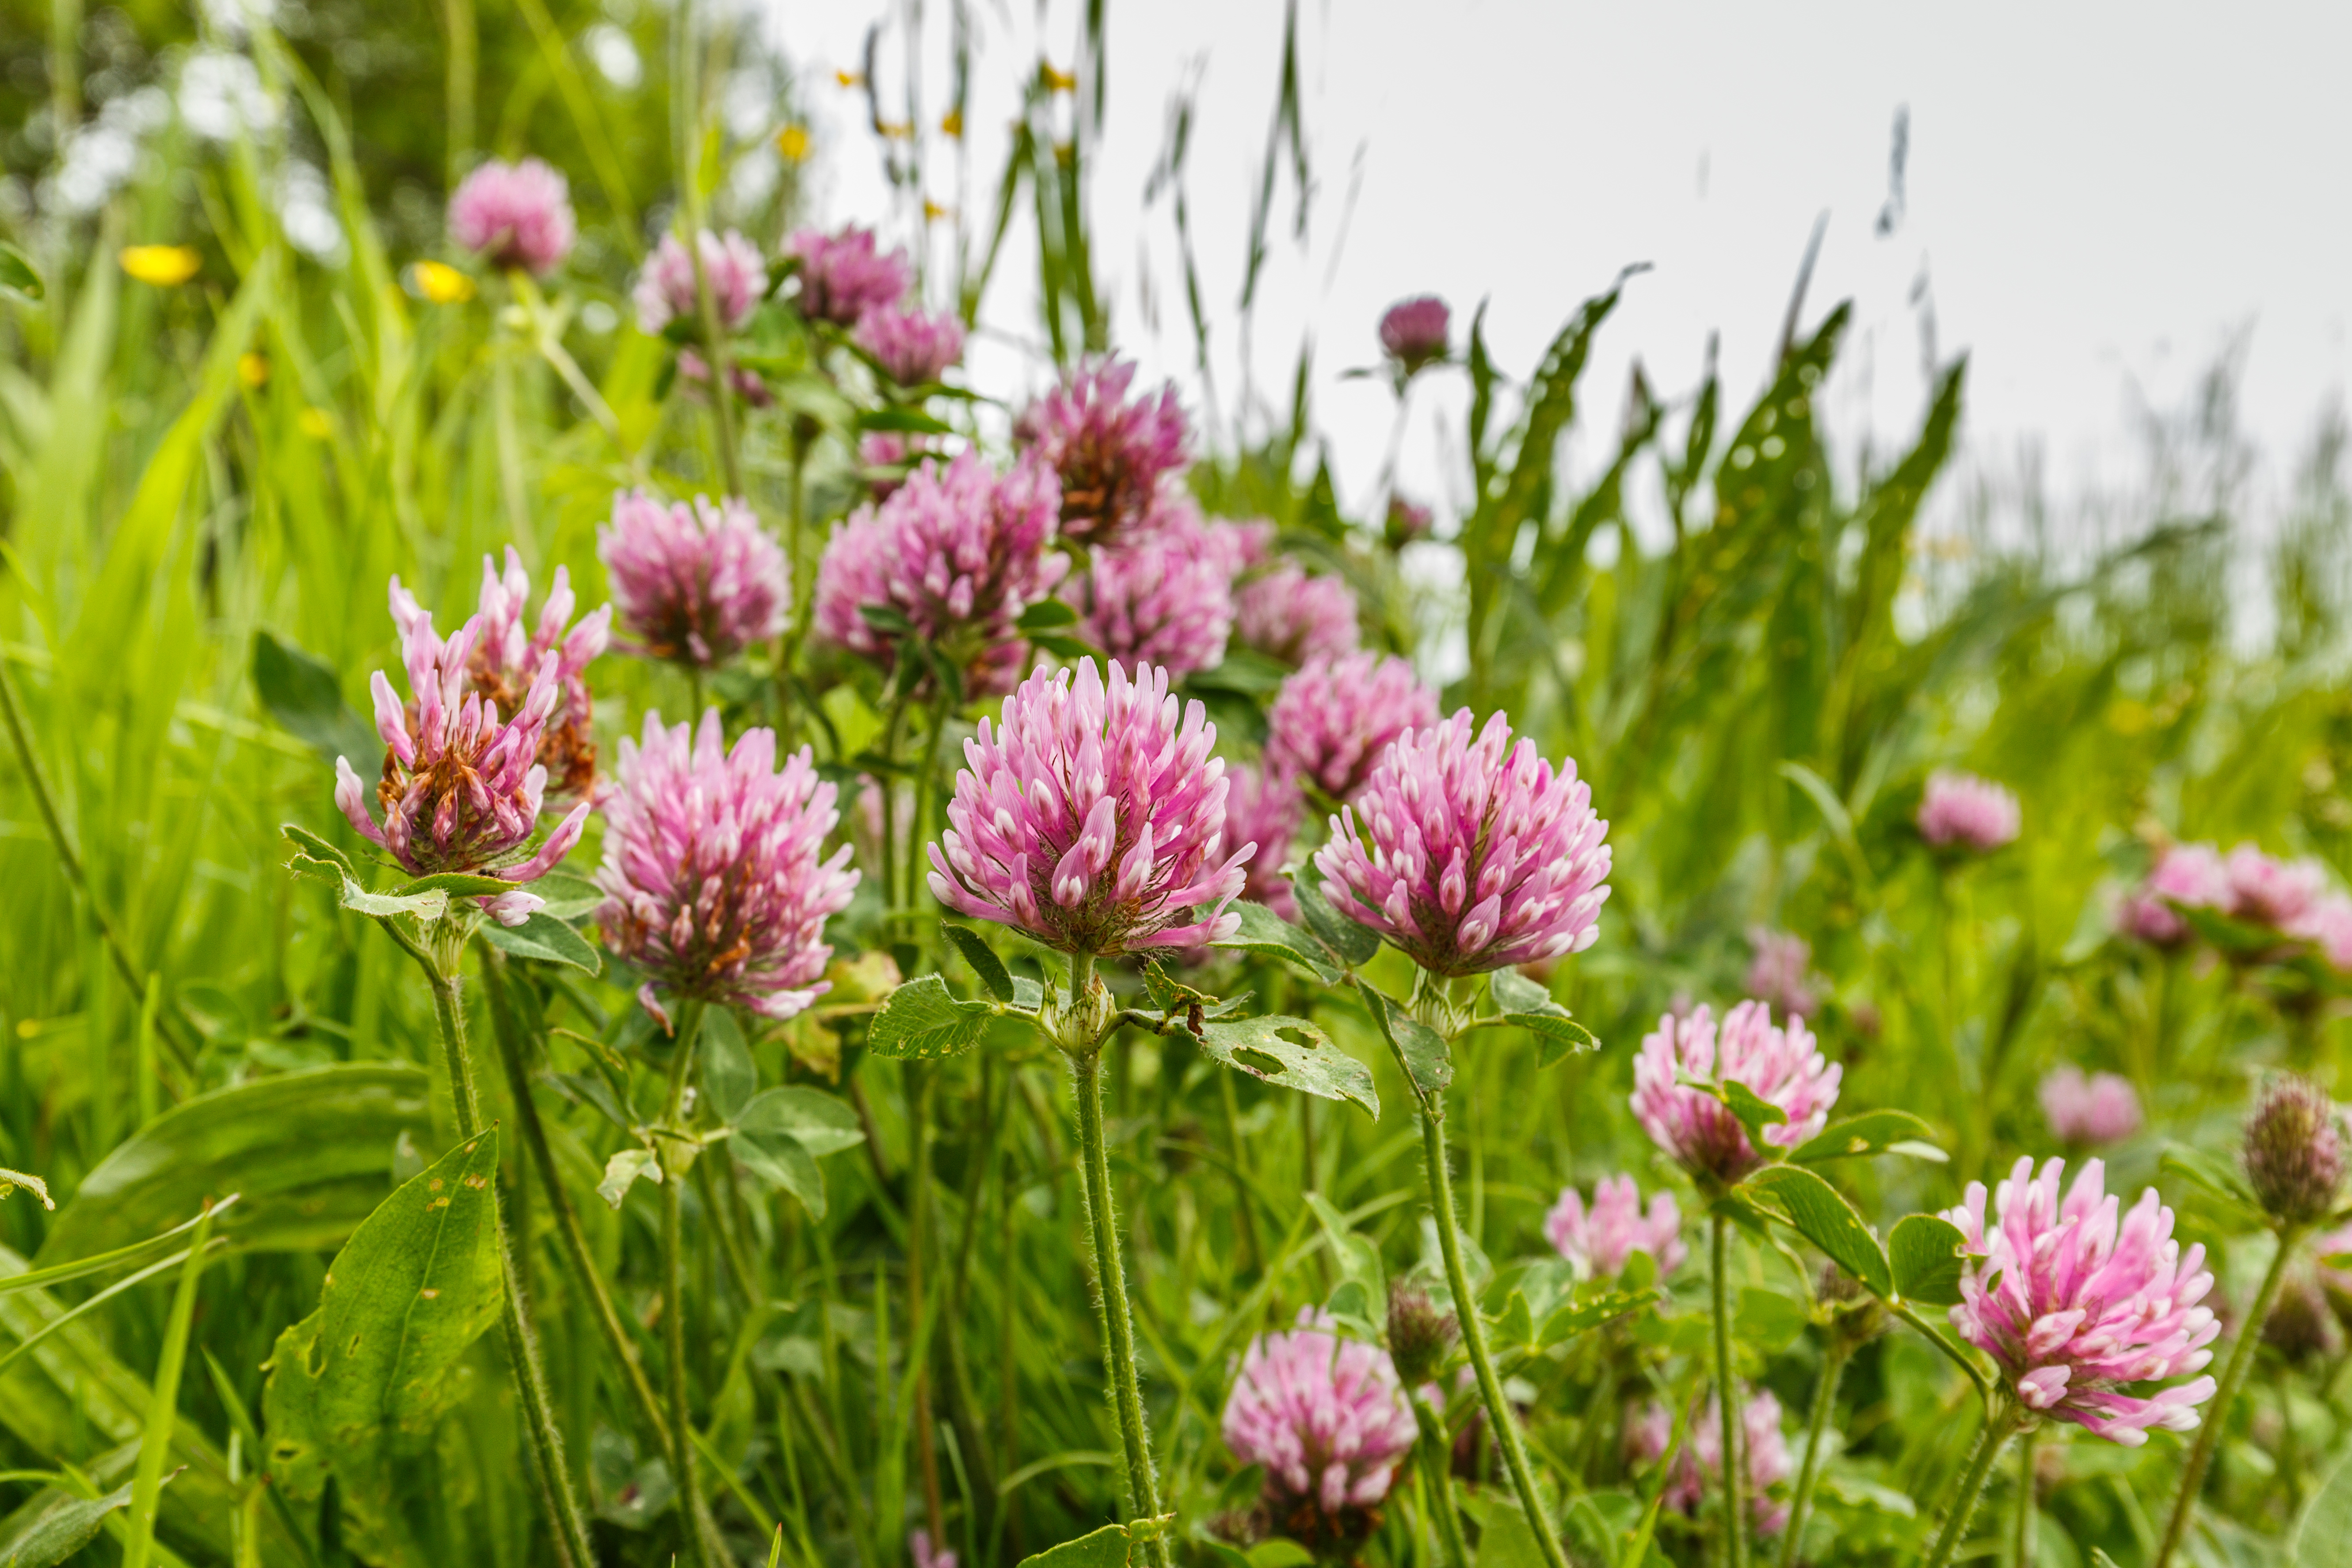 Les trèfles sont des plantes herbacées de la famille des Fabacées (Légumineuses), appartenant au genre Trifolium. Copyright (c) 2018 Photodigitaal.nl/Shutterstock.